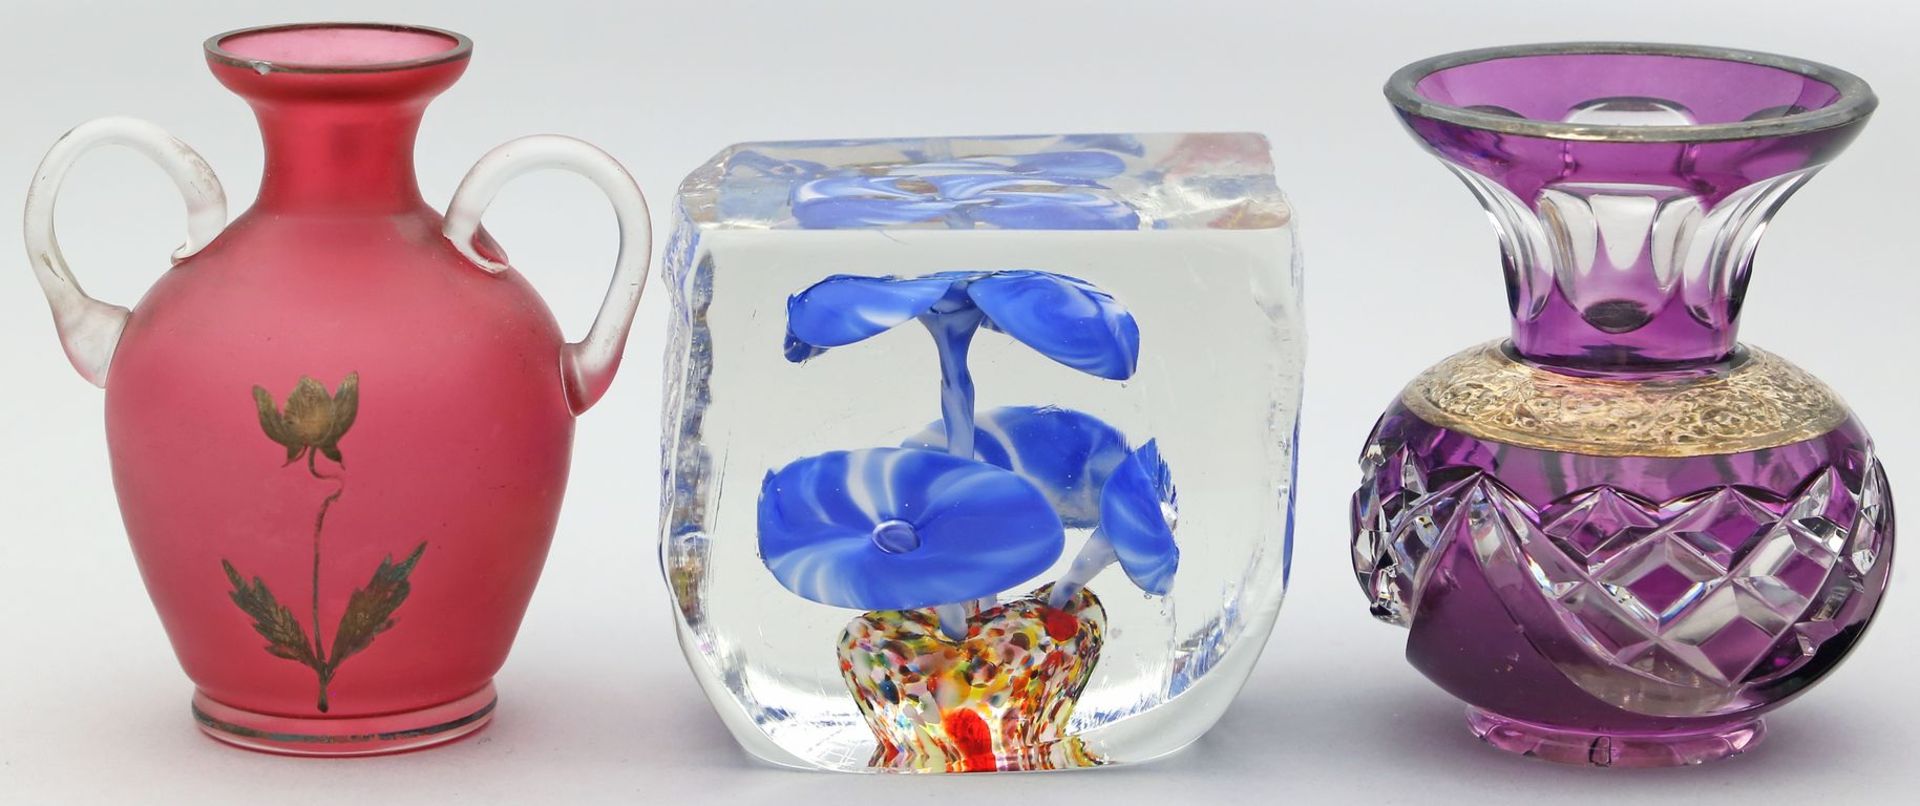 2 Vasen und Paperweight. Glas bzw. Kristall. Gebrauchsspuren, Kanten l. best. Papierweight unter dem